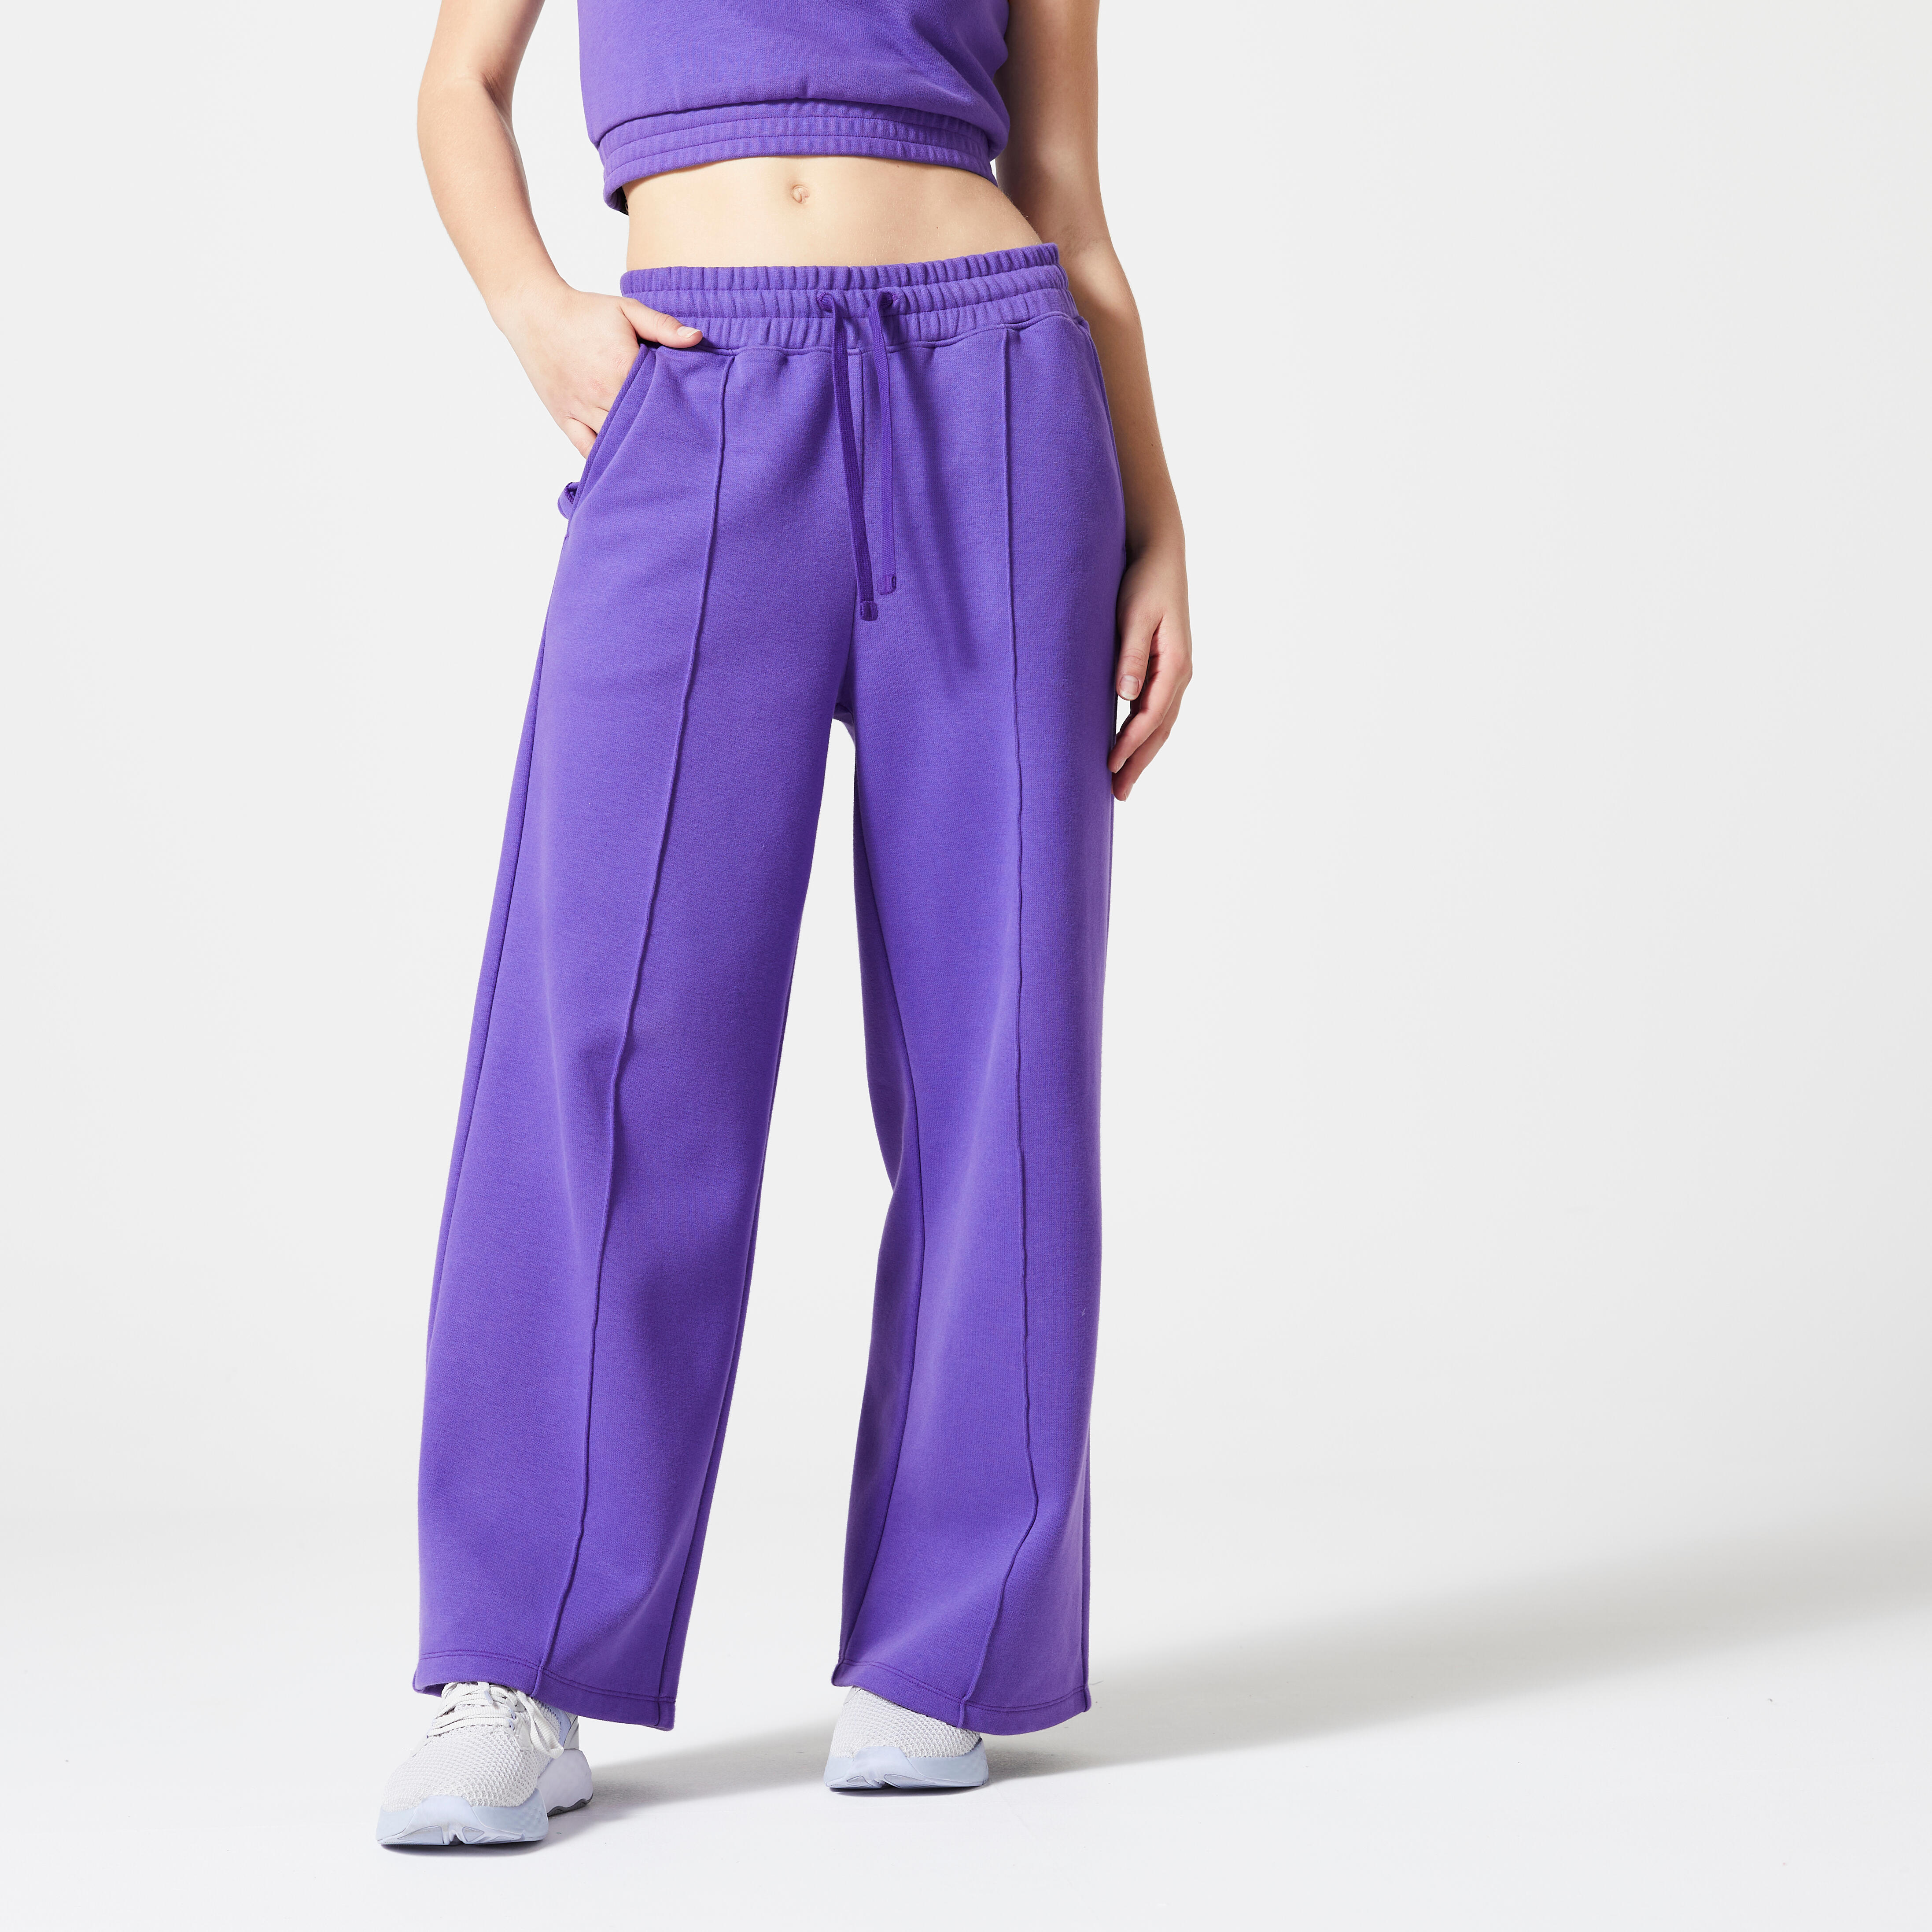 Pantalon de sport femme – Essentials 500 violet - Violet neon - Domyos -  Décathlon